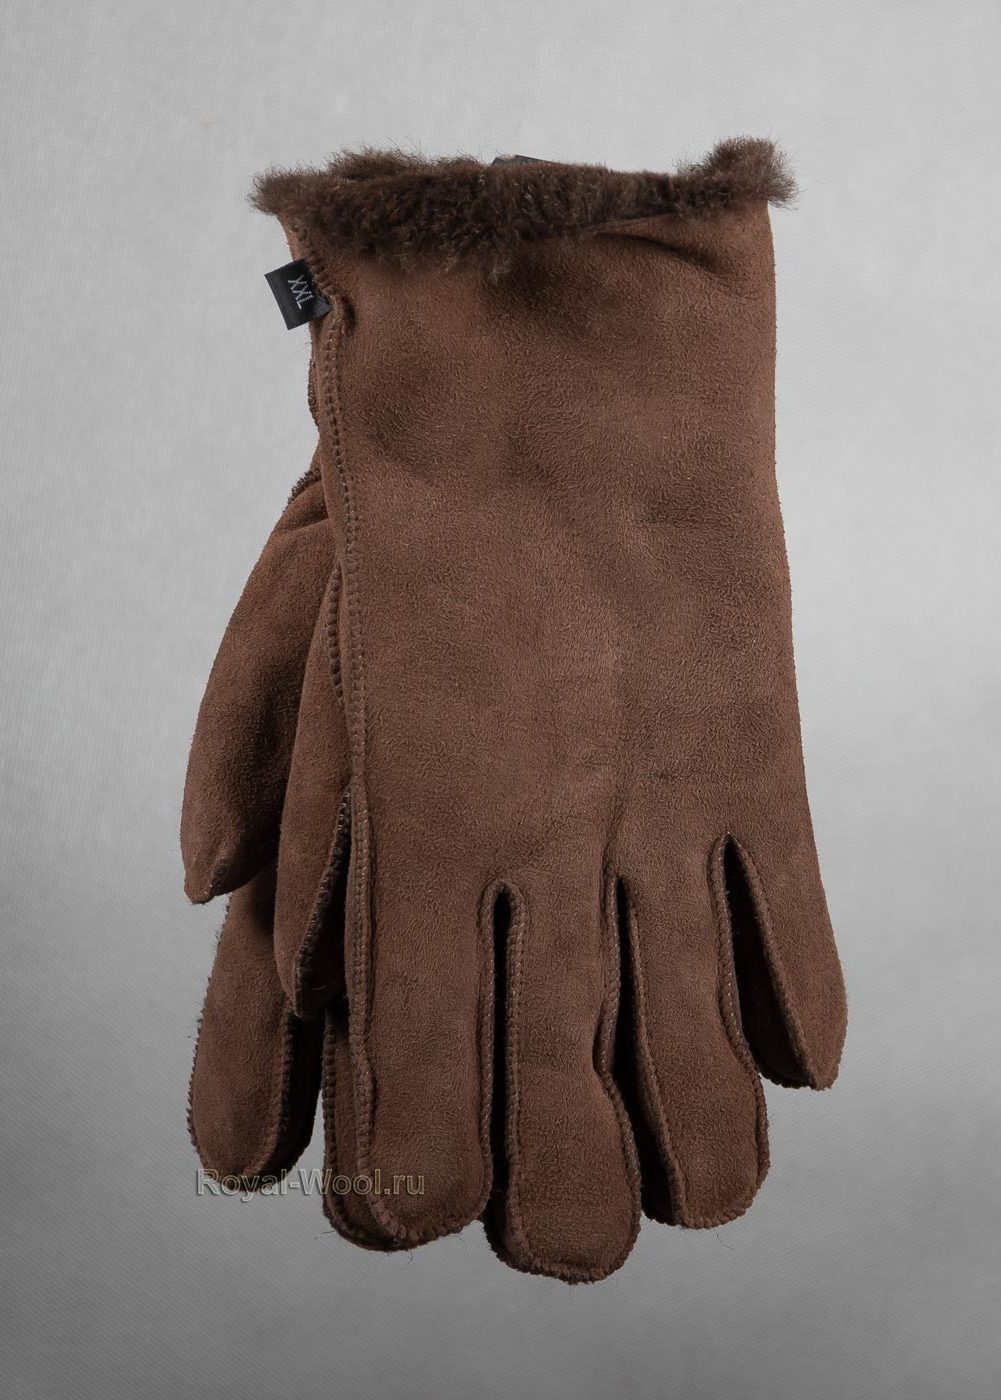 перчатки мужские зимние в москве